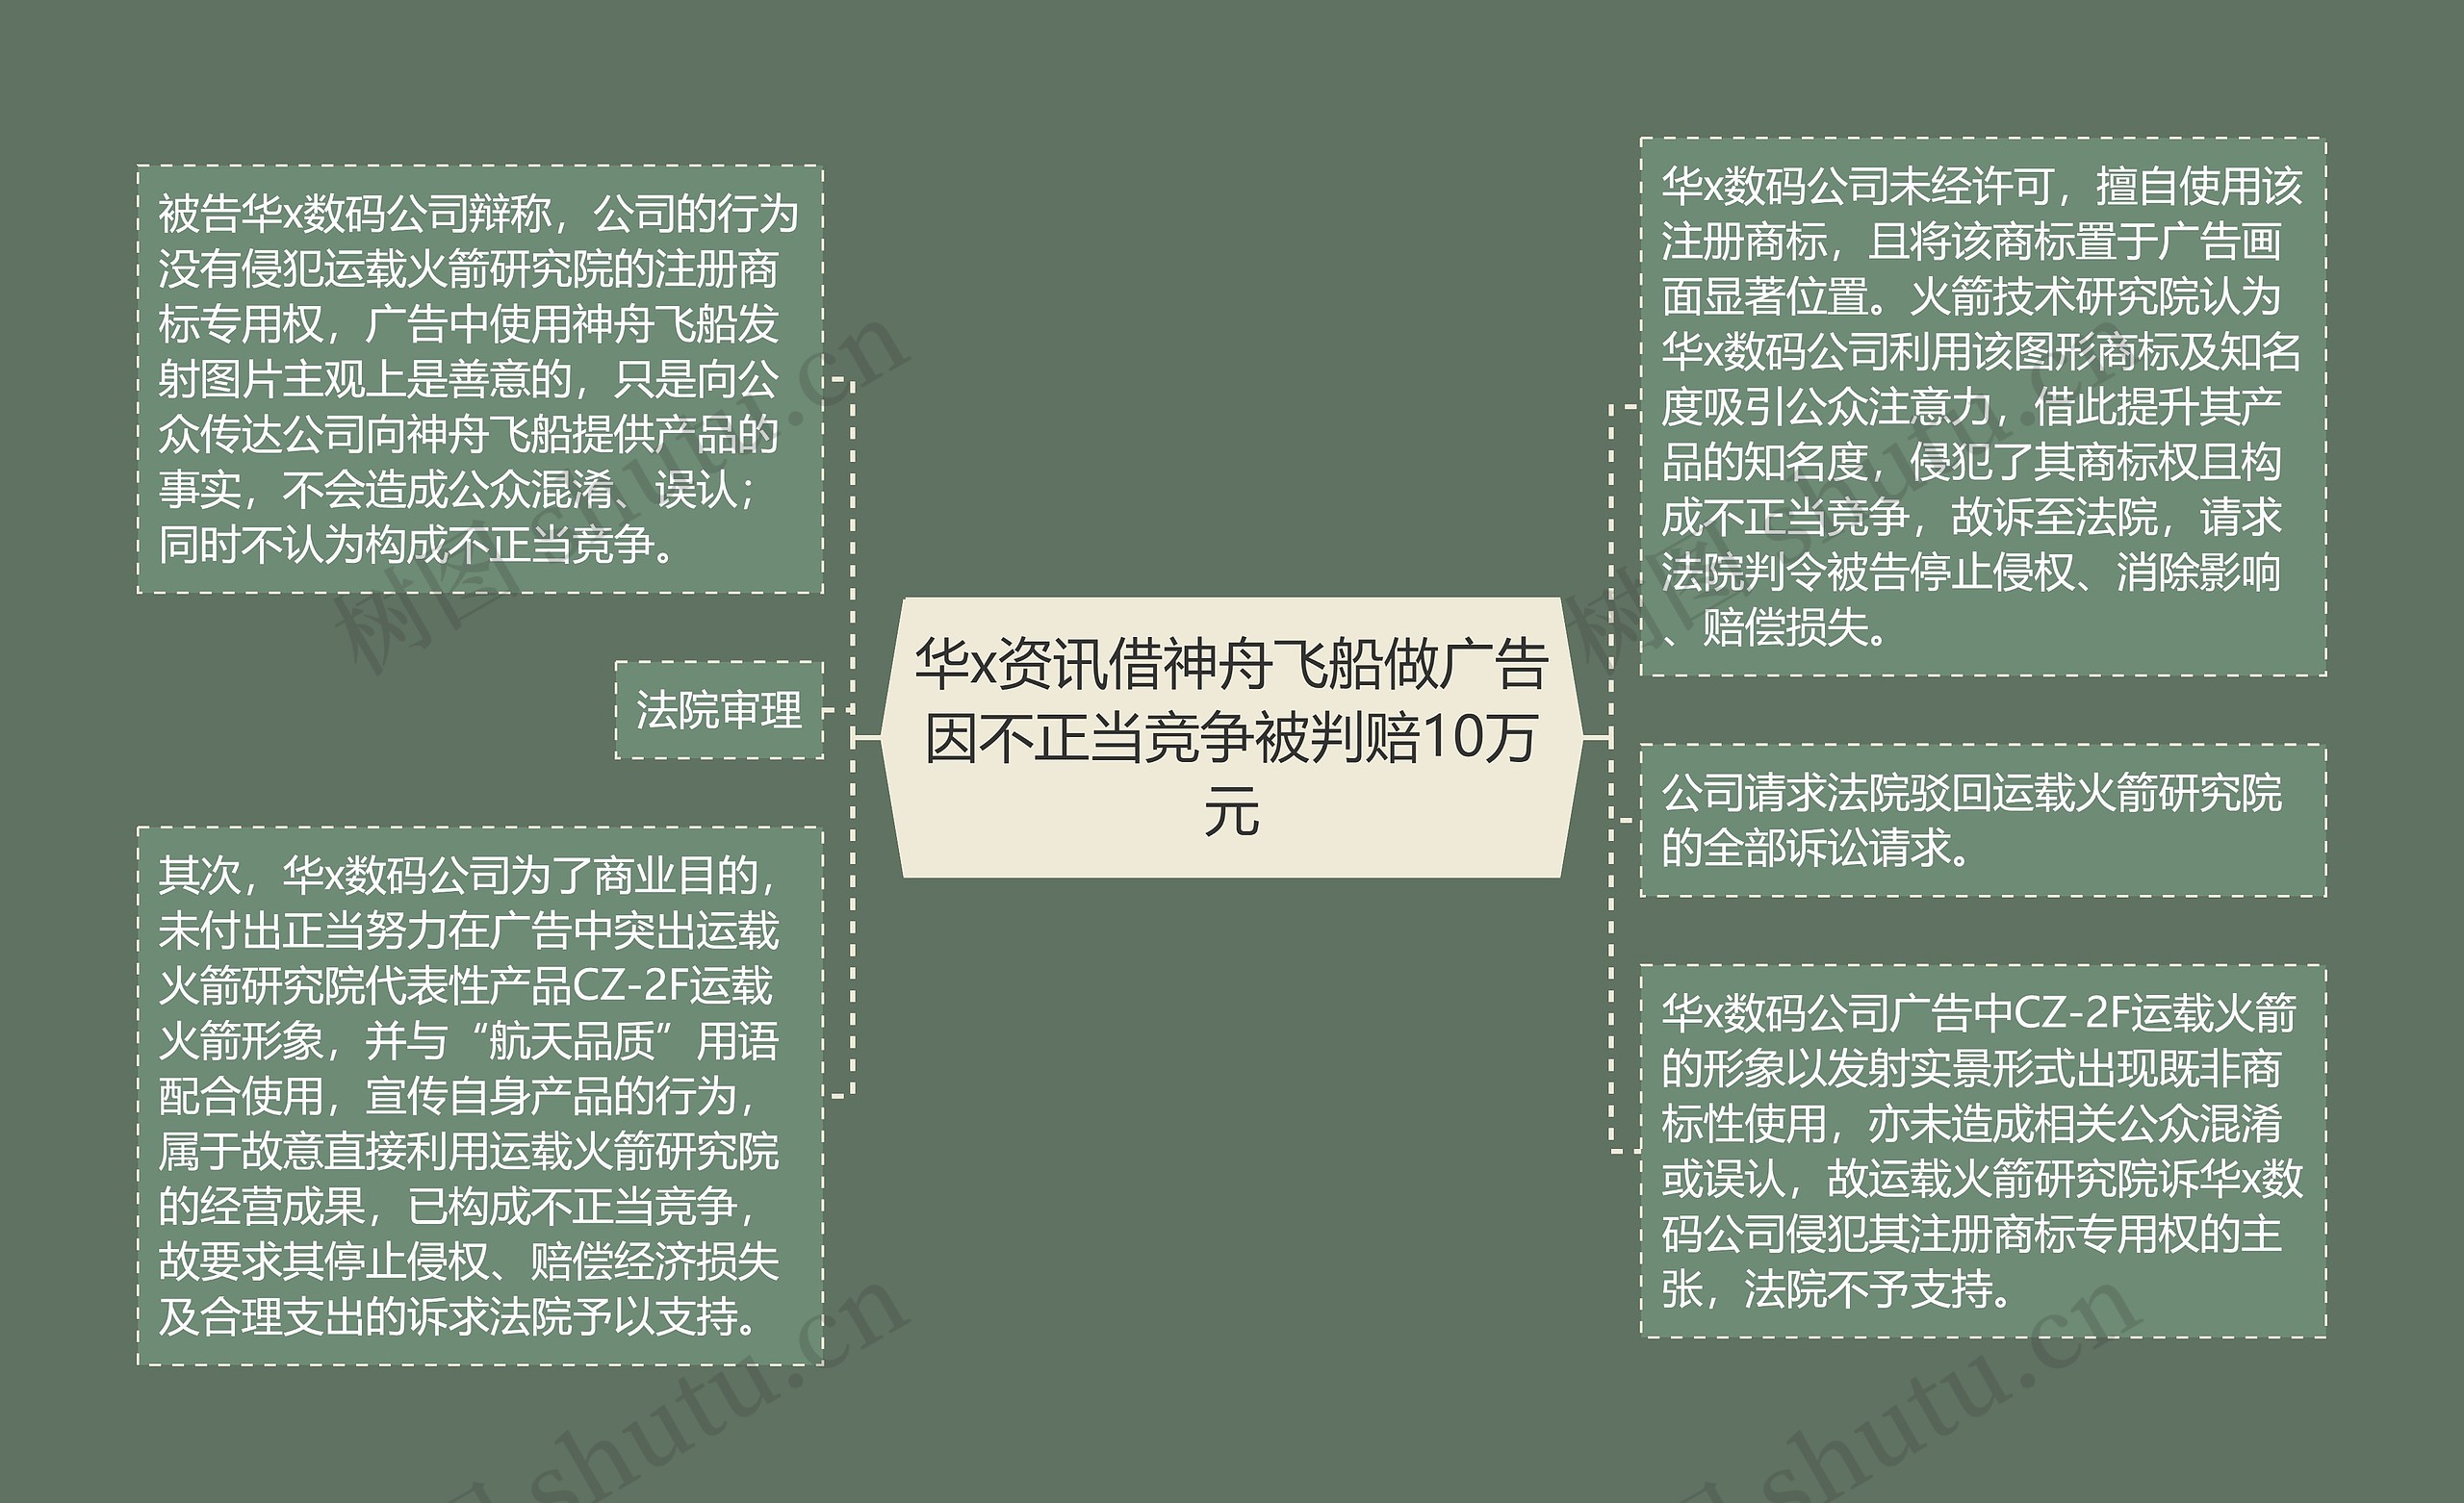 华x资讯借神舟飞船做广告因不正当竞争被判赔10万元